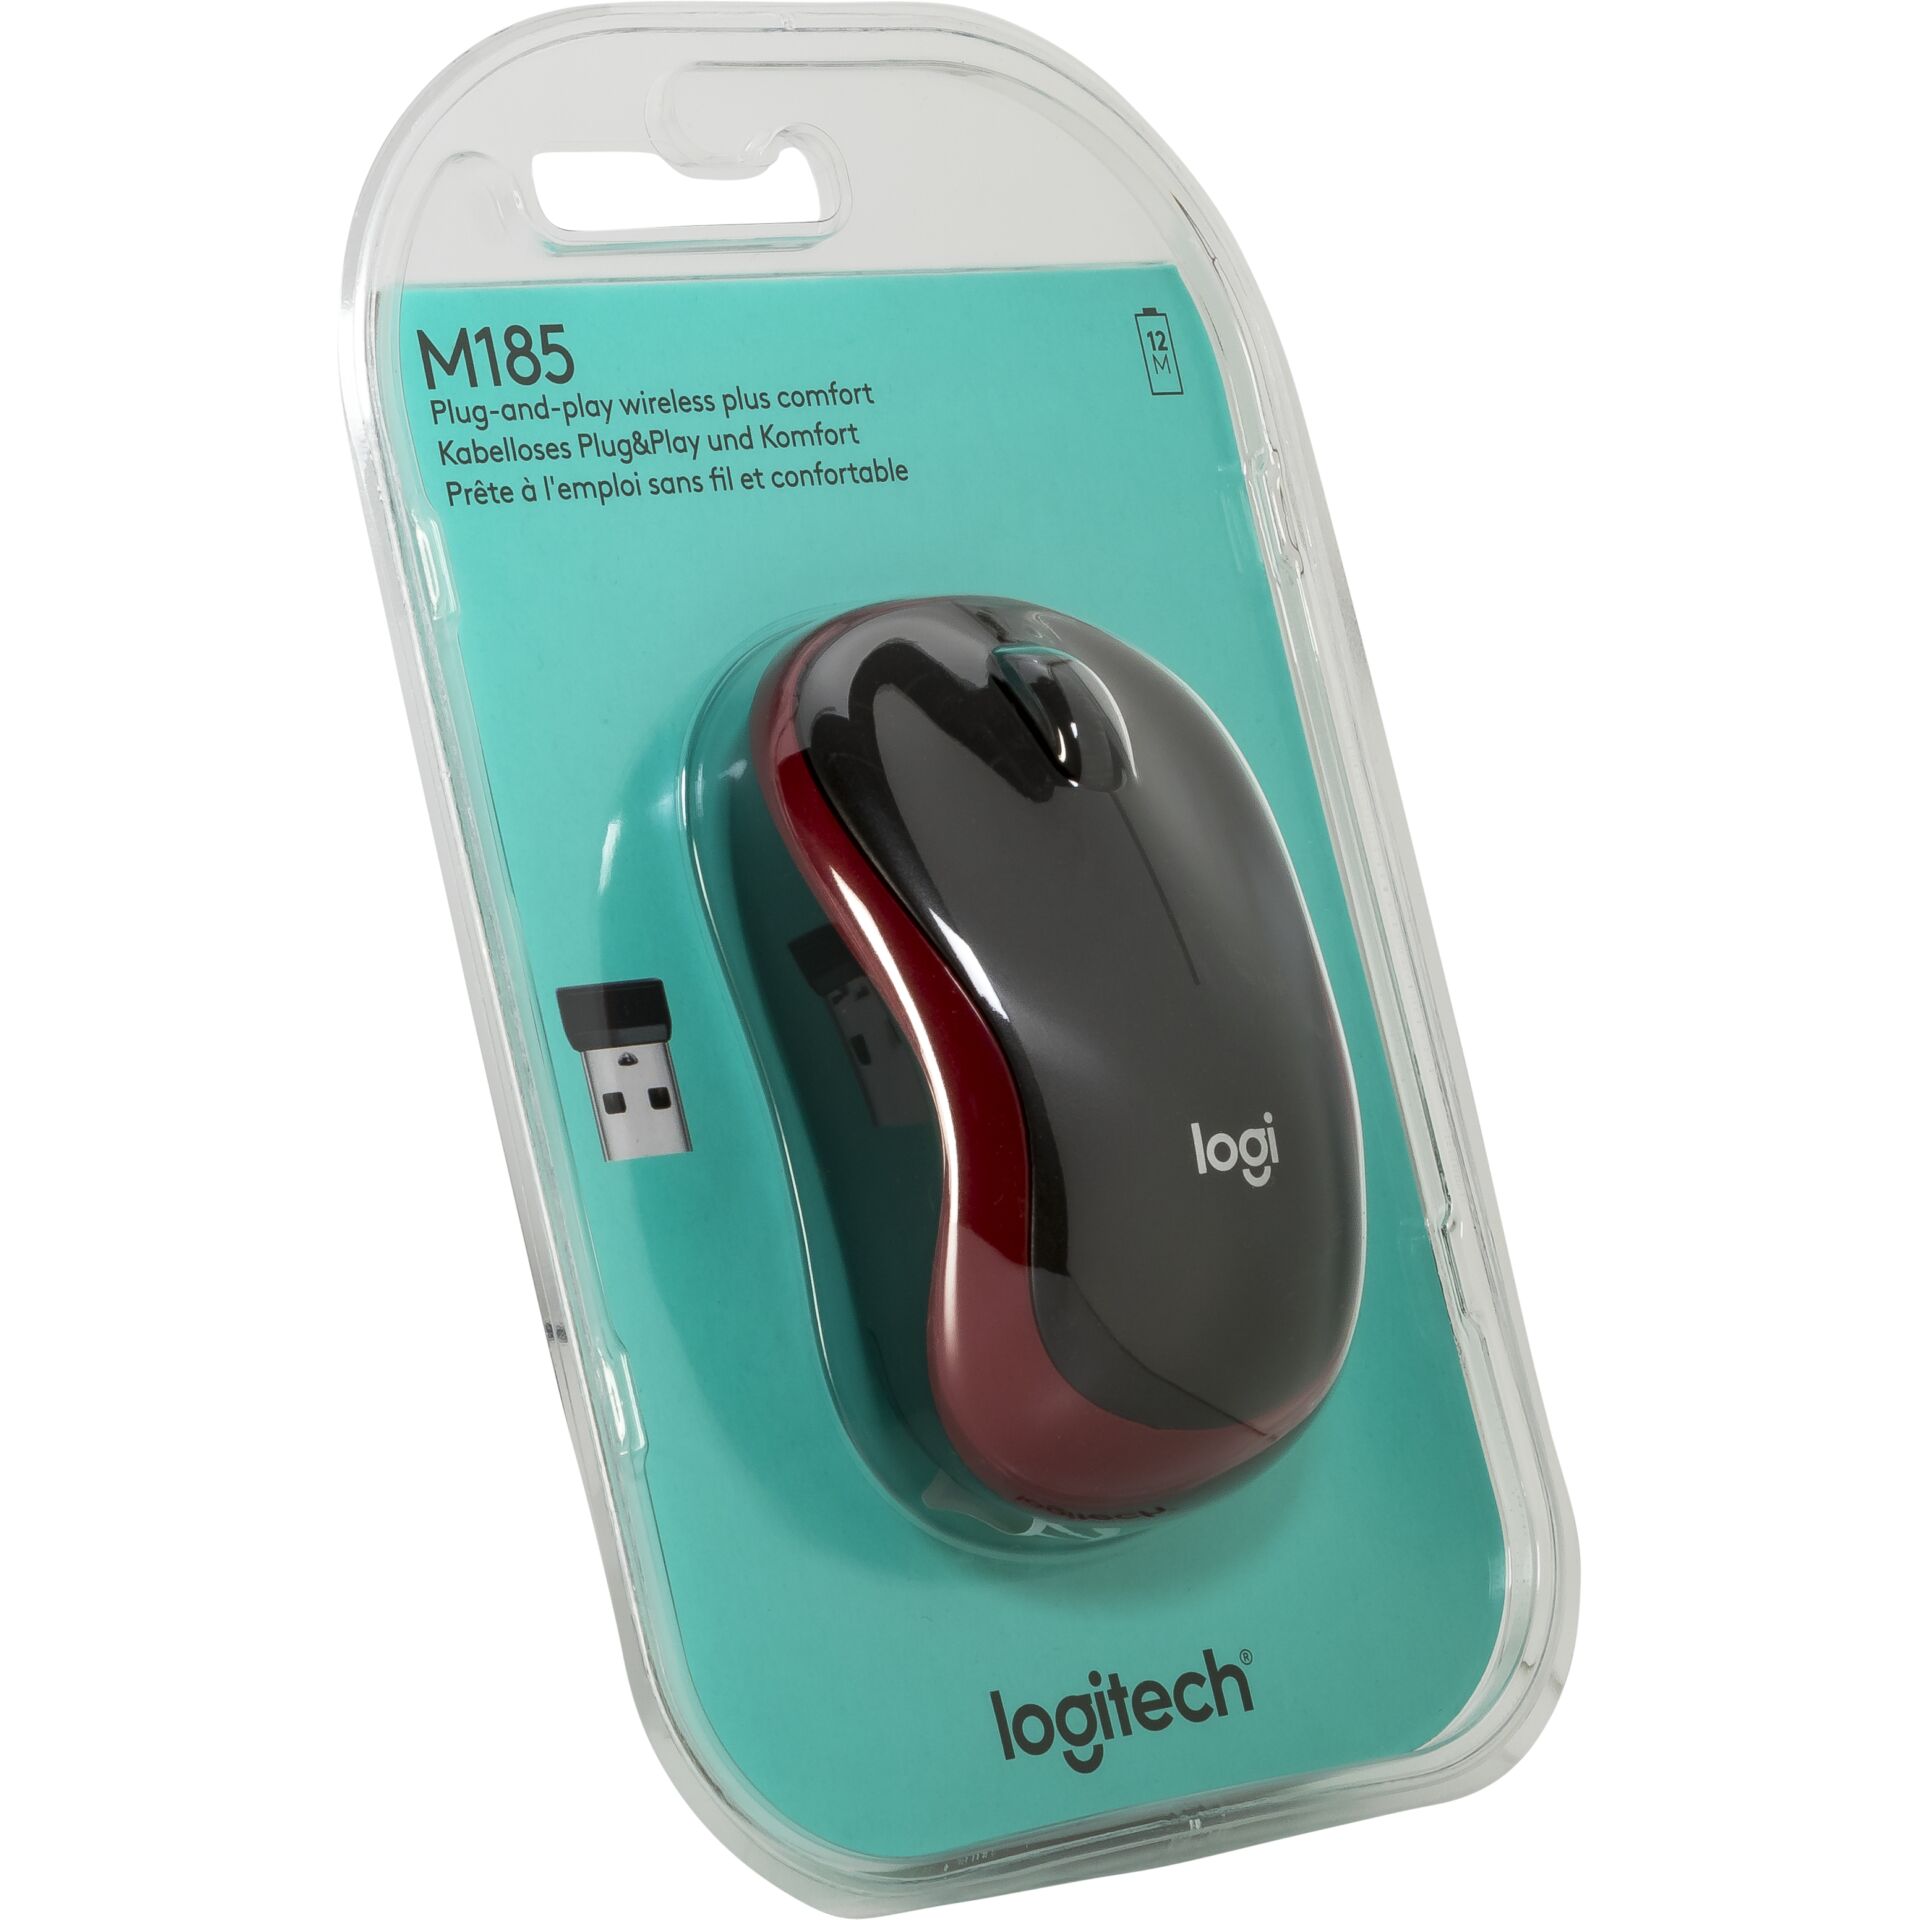 USB M185 rot Wireless Maus günstig bei Logitech